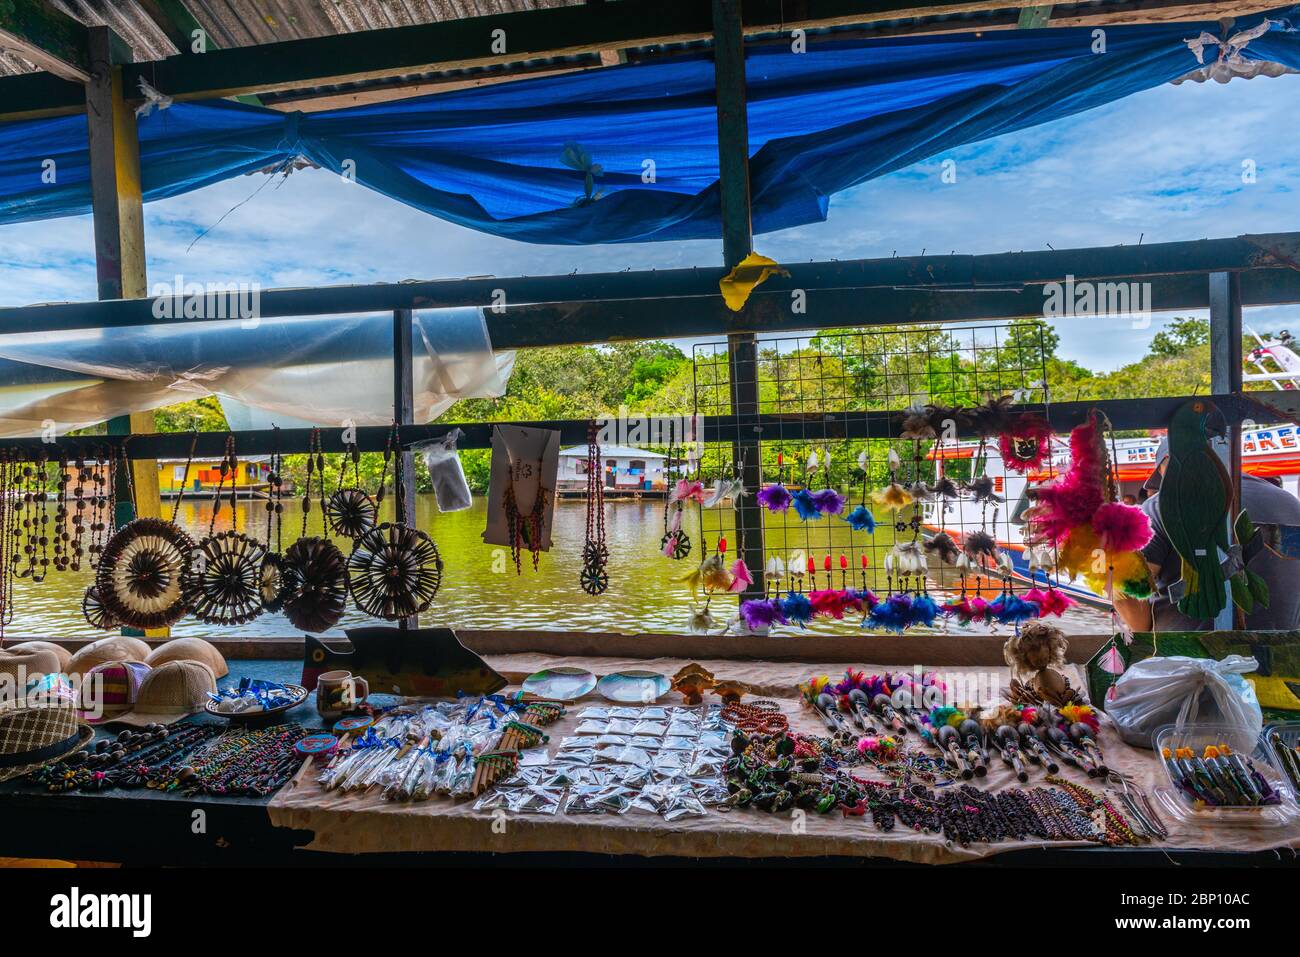 Souvenirstand mit Produkten der indigenen Bevölkerung, Amazonas bei Manaus, Amazonas, Brasilien, Lateinamerika Stockfoto